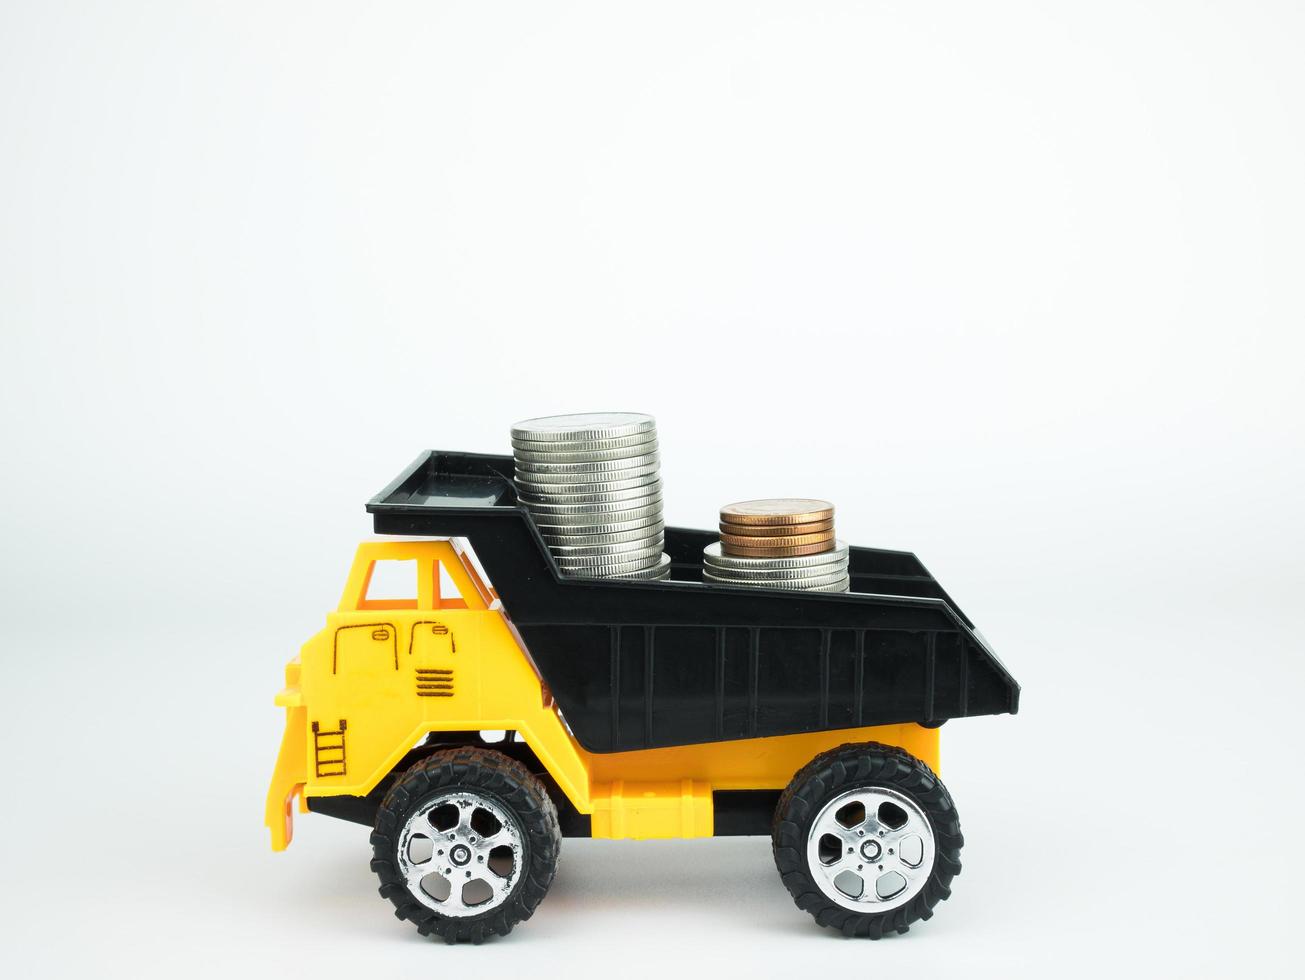 Camion giocattolo con monete su sfondo bianco, business concept foto